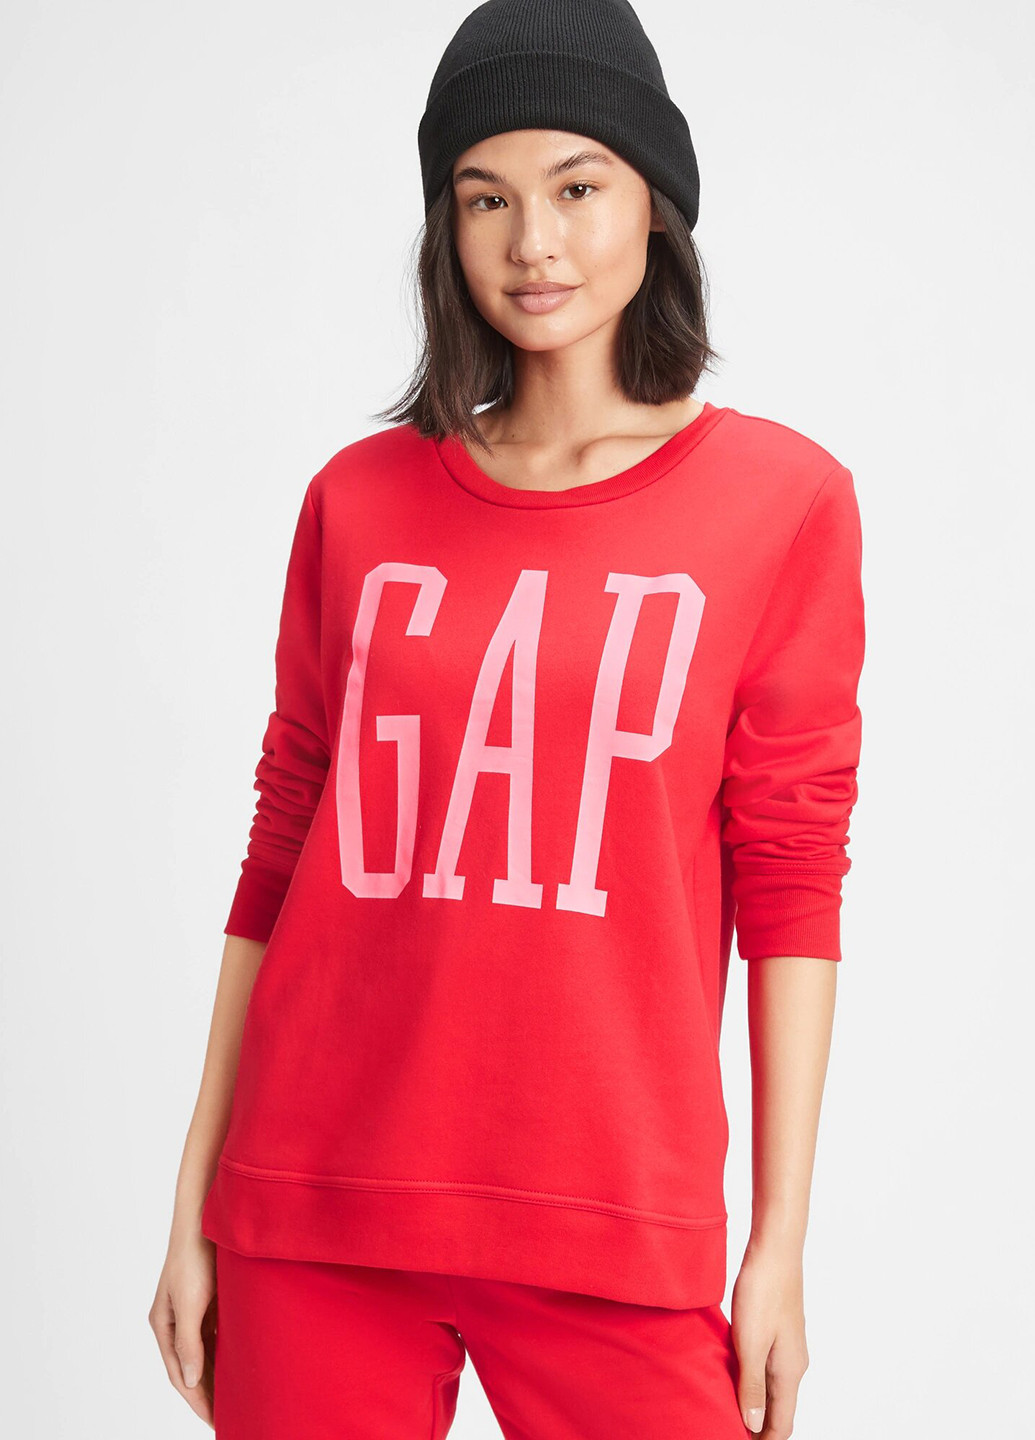 Костюм (свитшот, брюки) Gap логотип красный спортивный хлопок, трикотаж